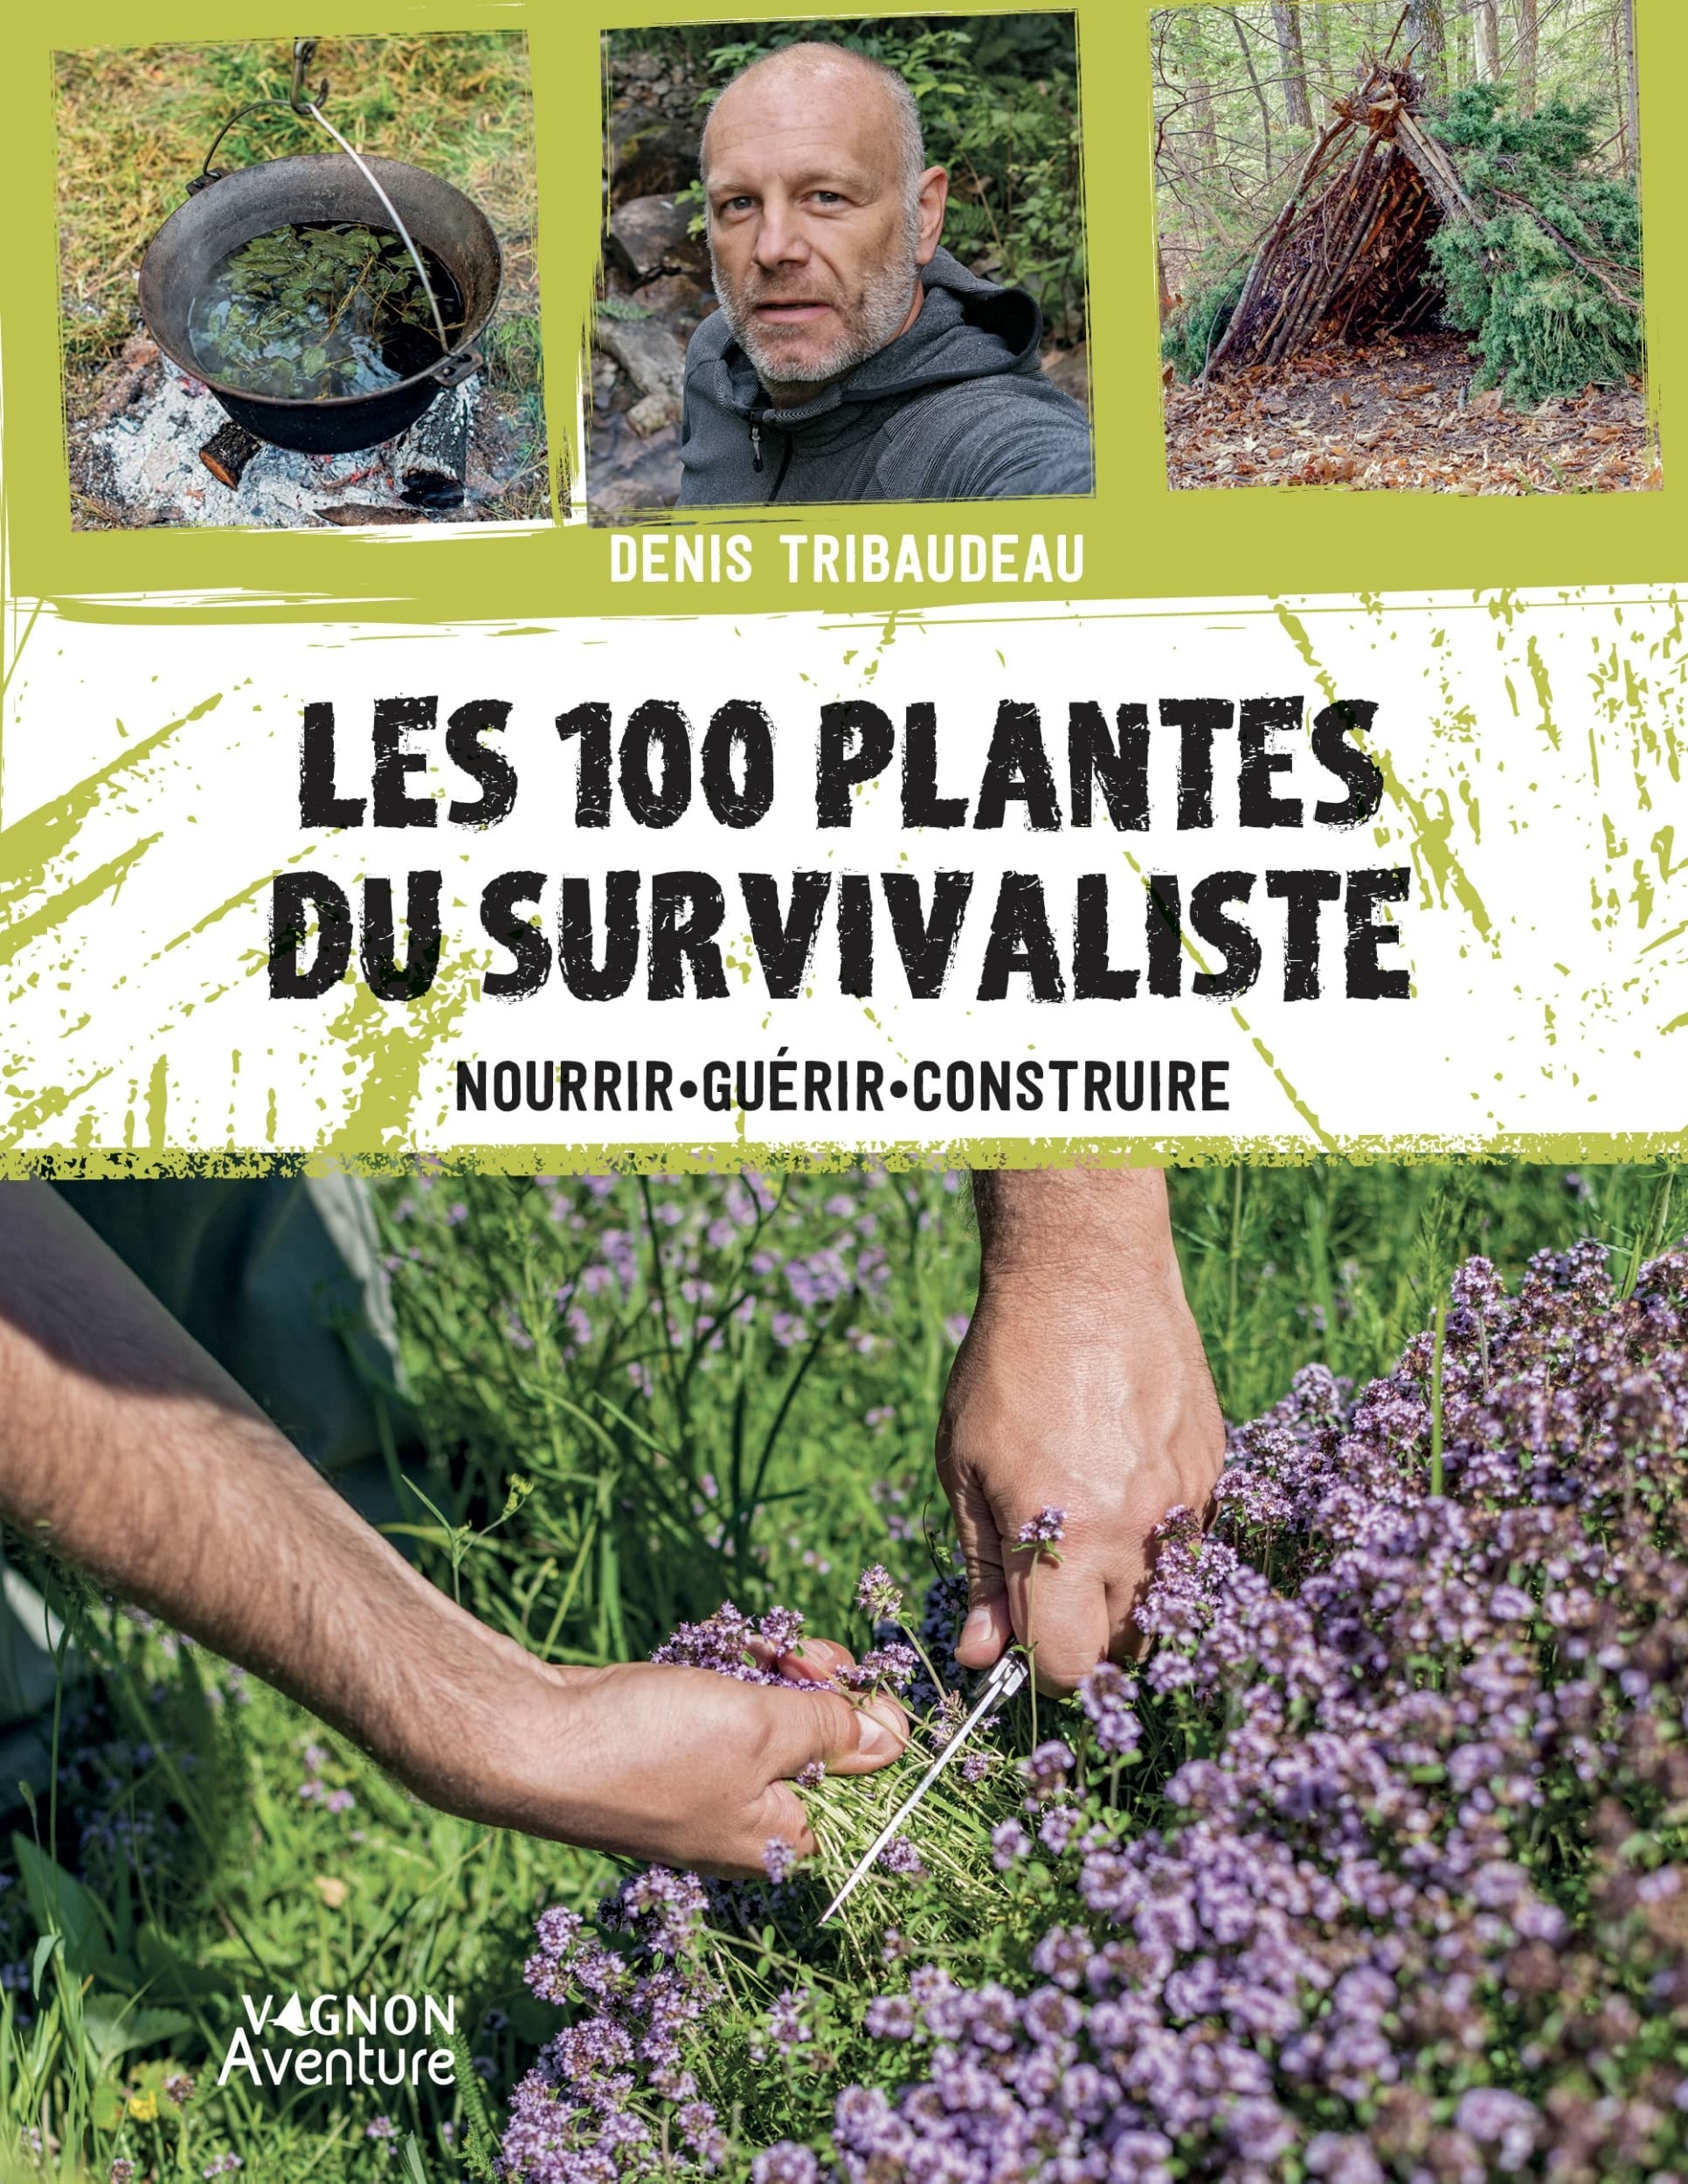 Les 100 plantes du survivaliste: Nourrir, guérir, construire